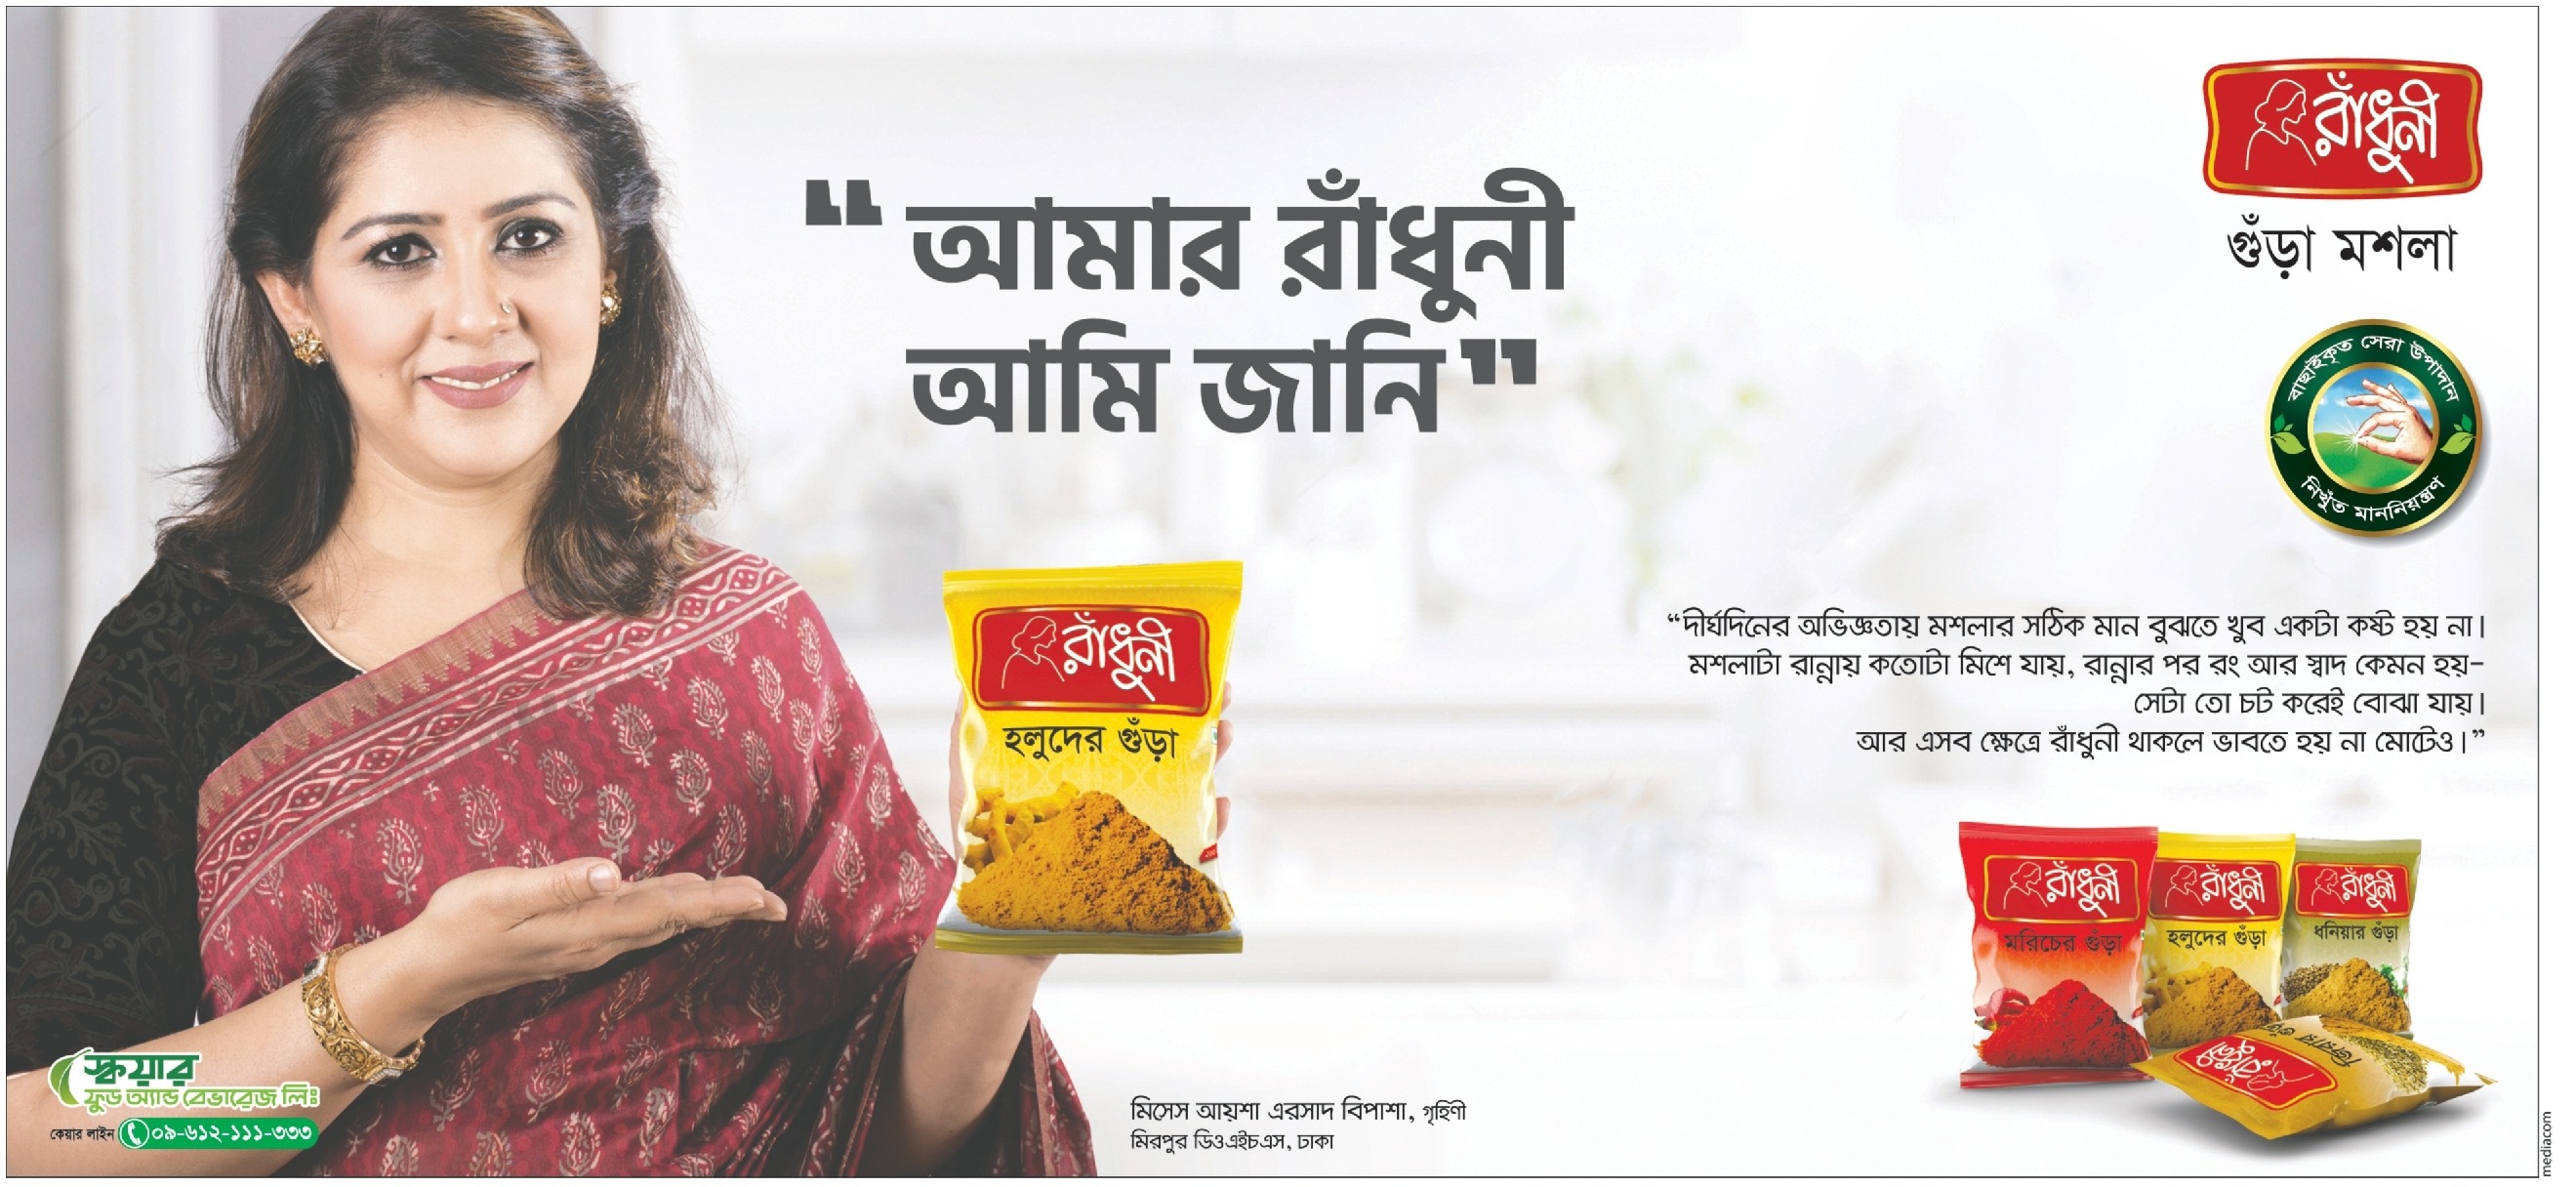 Radhuni Spices Press Ad – Testimonial